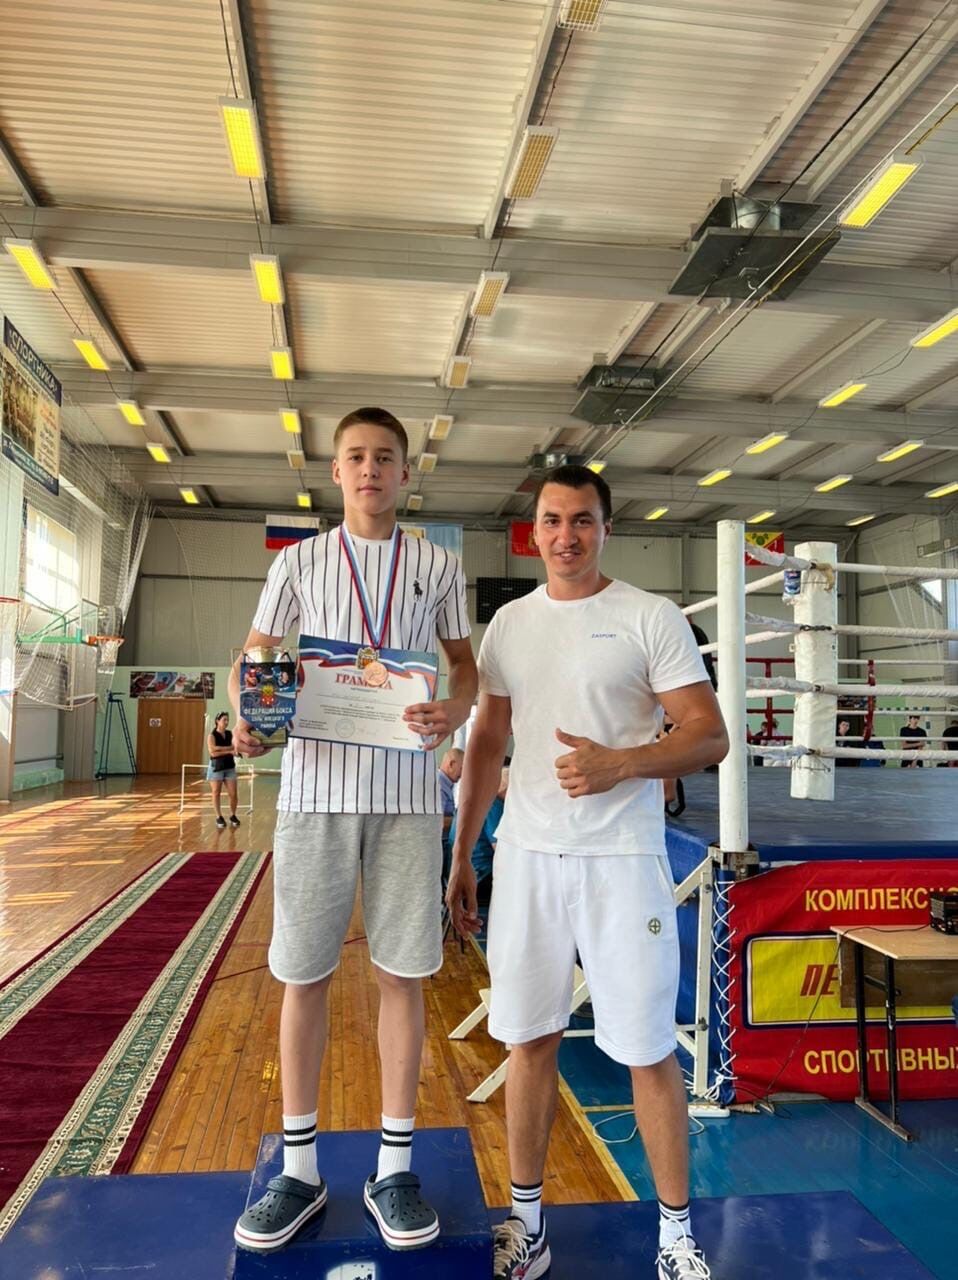 Боксер из Альметьевска занял 3 место в Межрегиональнoм турнире по боксу